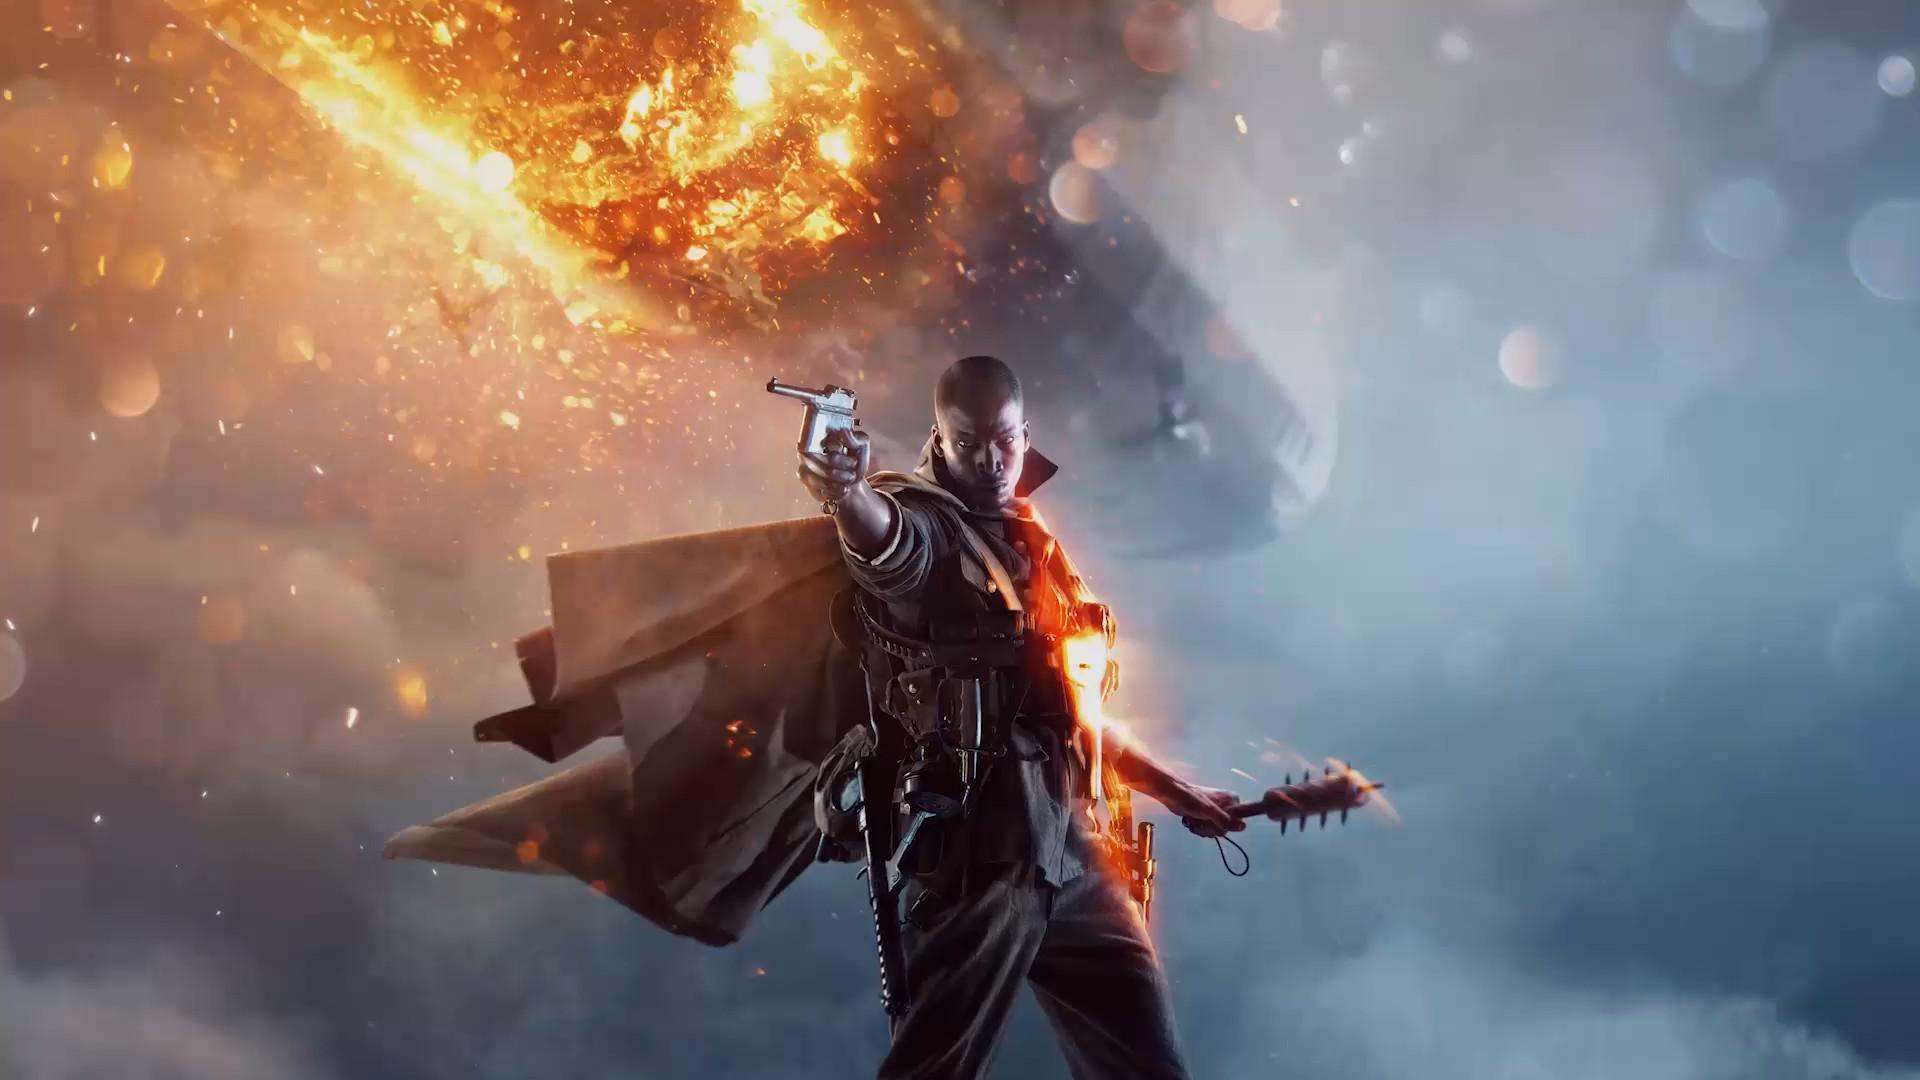 Battlefield 1 Official Gameplay Trailer 